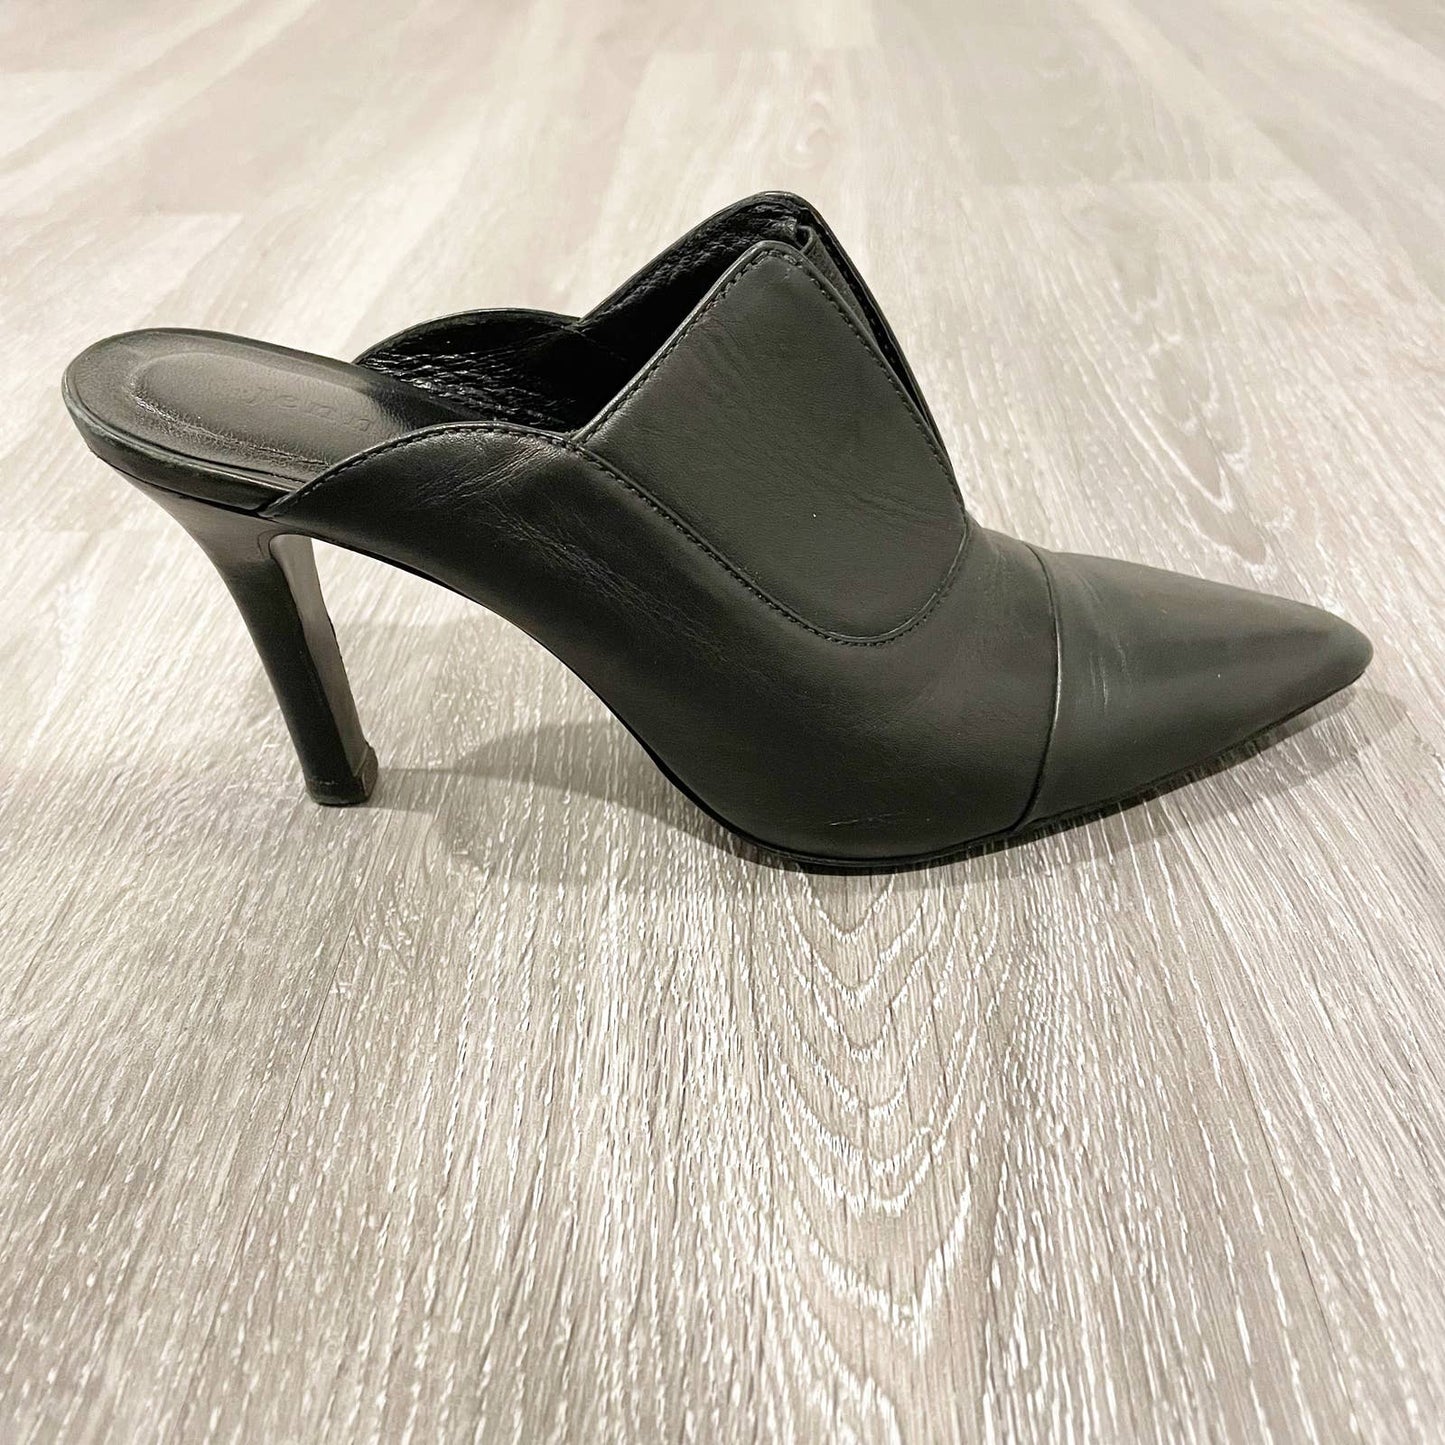 Jenni Kayne Leather Pointed Toe Mule Heels Black 37 / 7